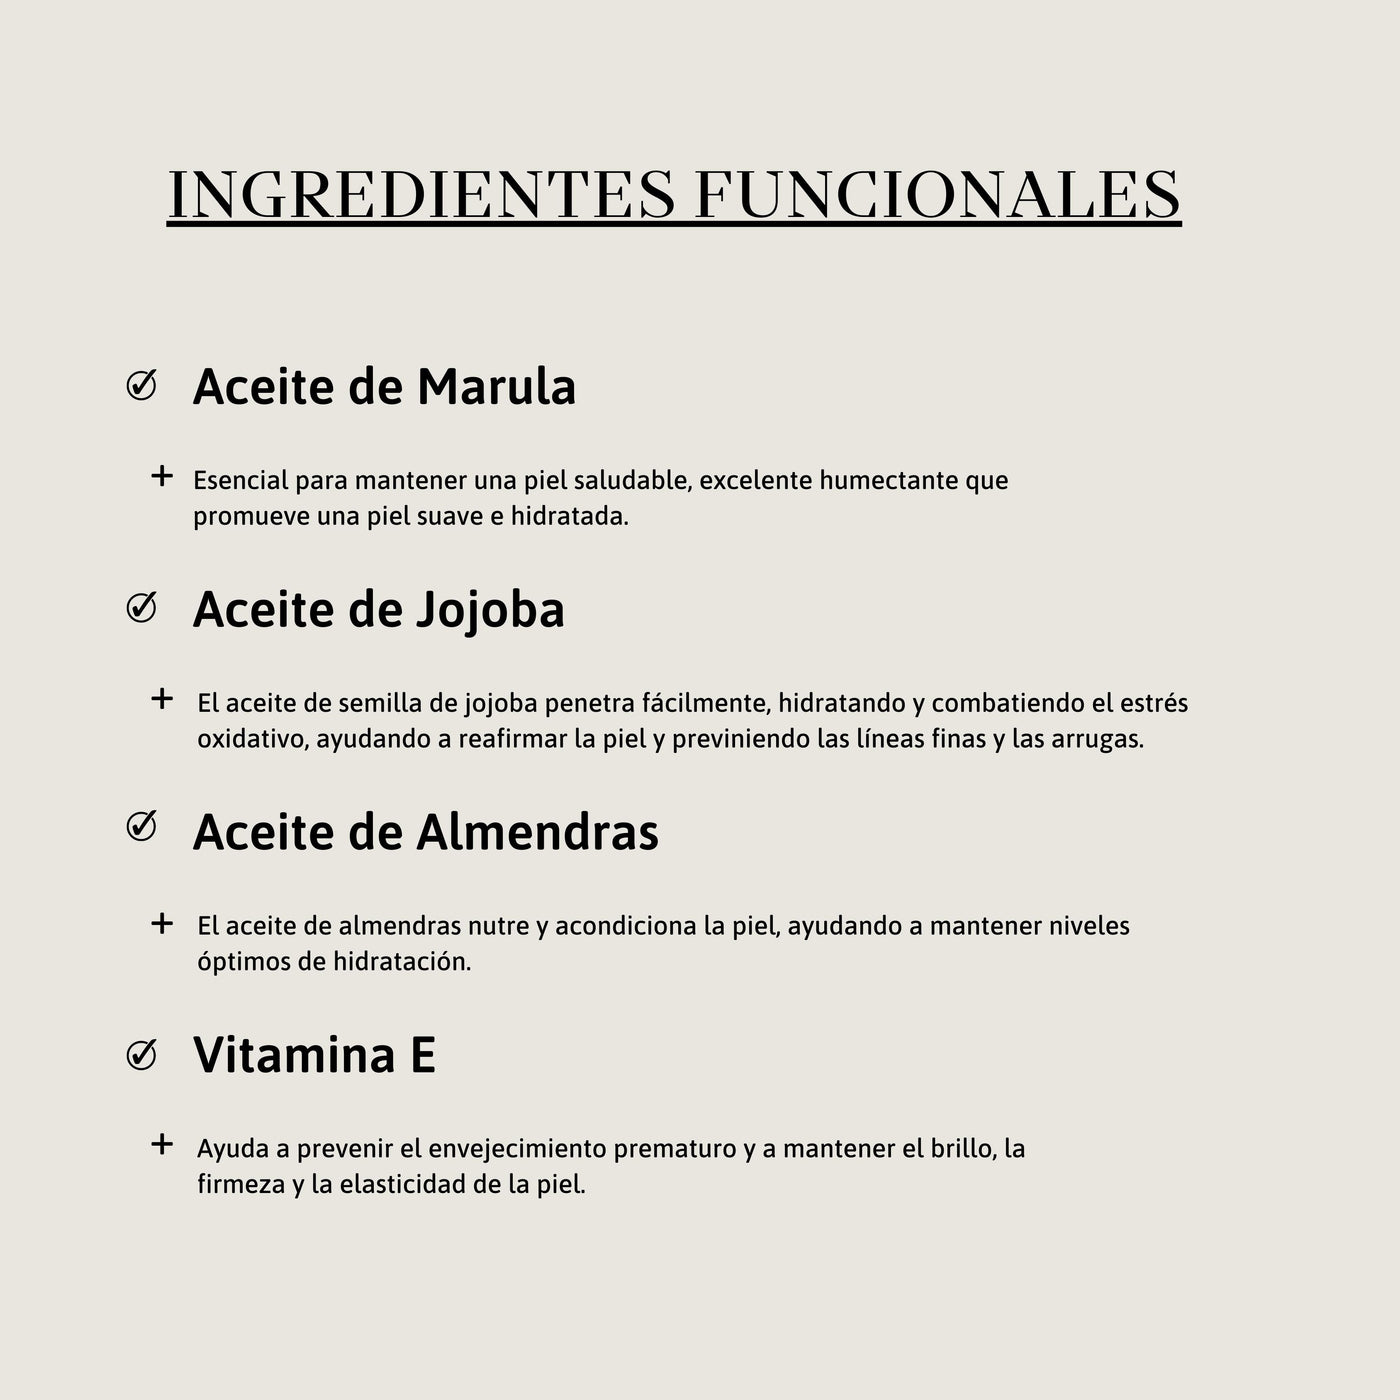 Aceite de limpieza con aceite de jojoba, aceite de marula, aceite de almendra y vitamina E